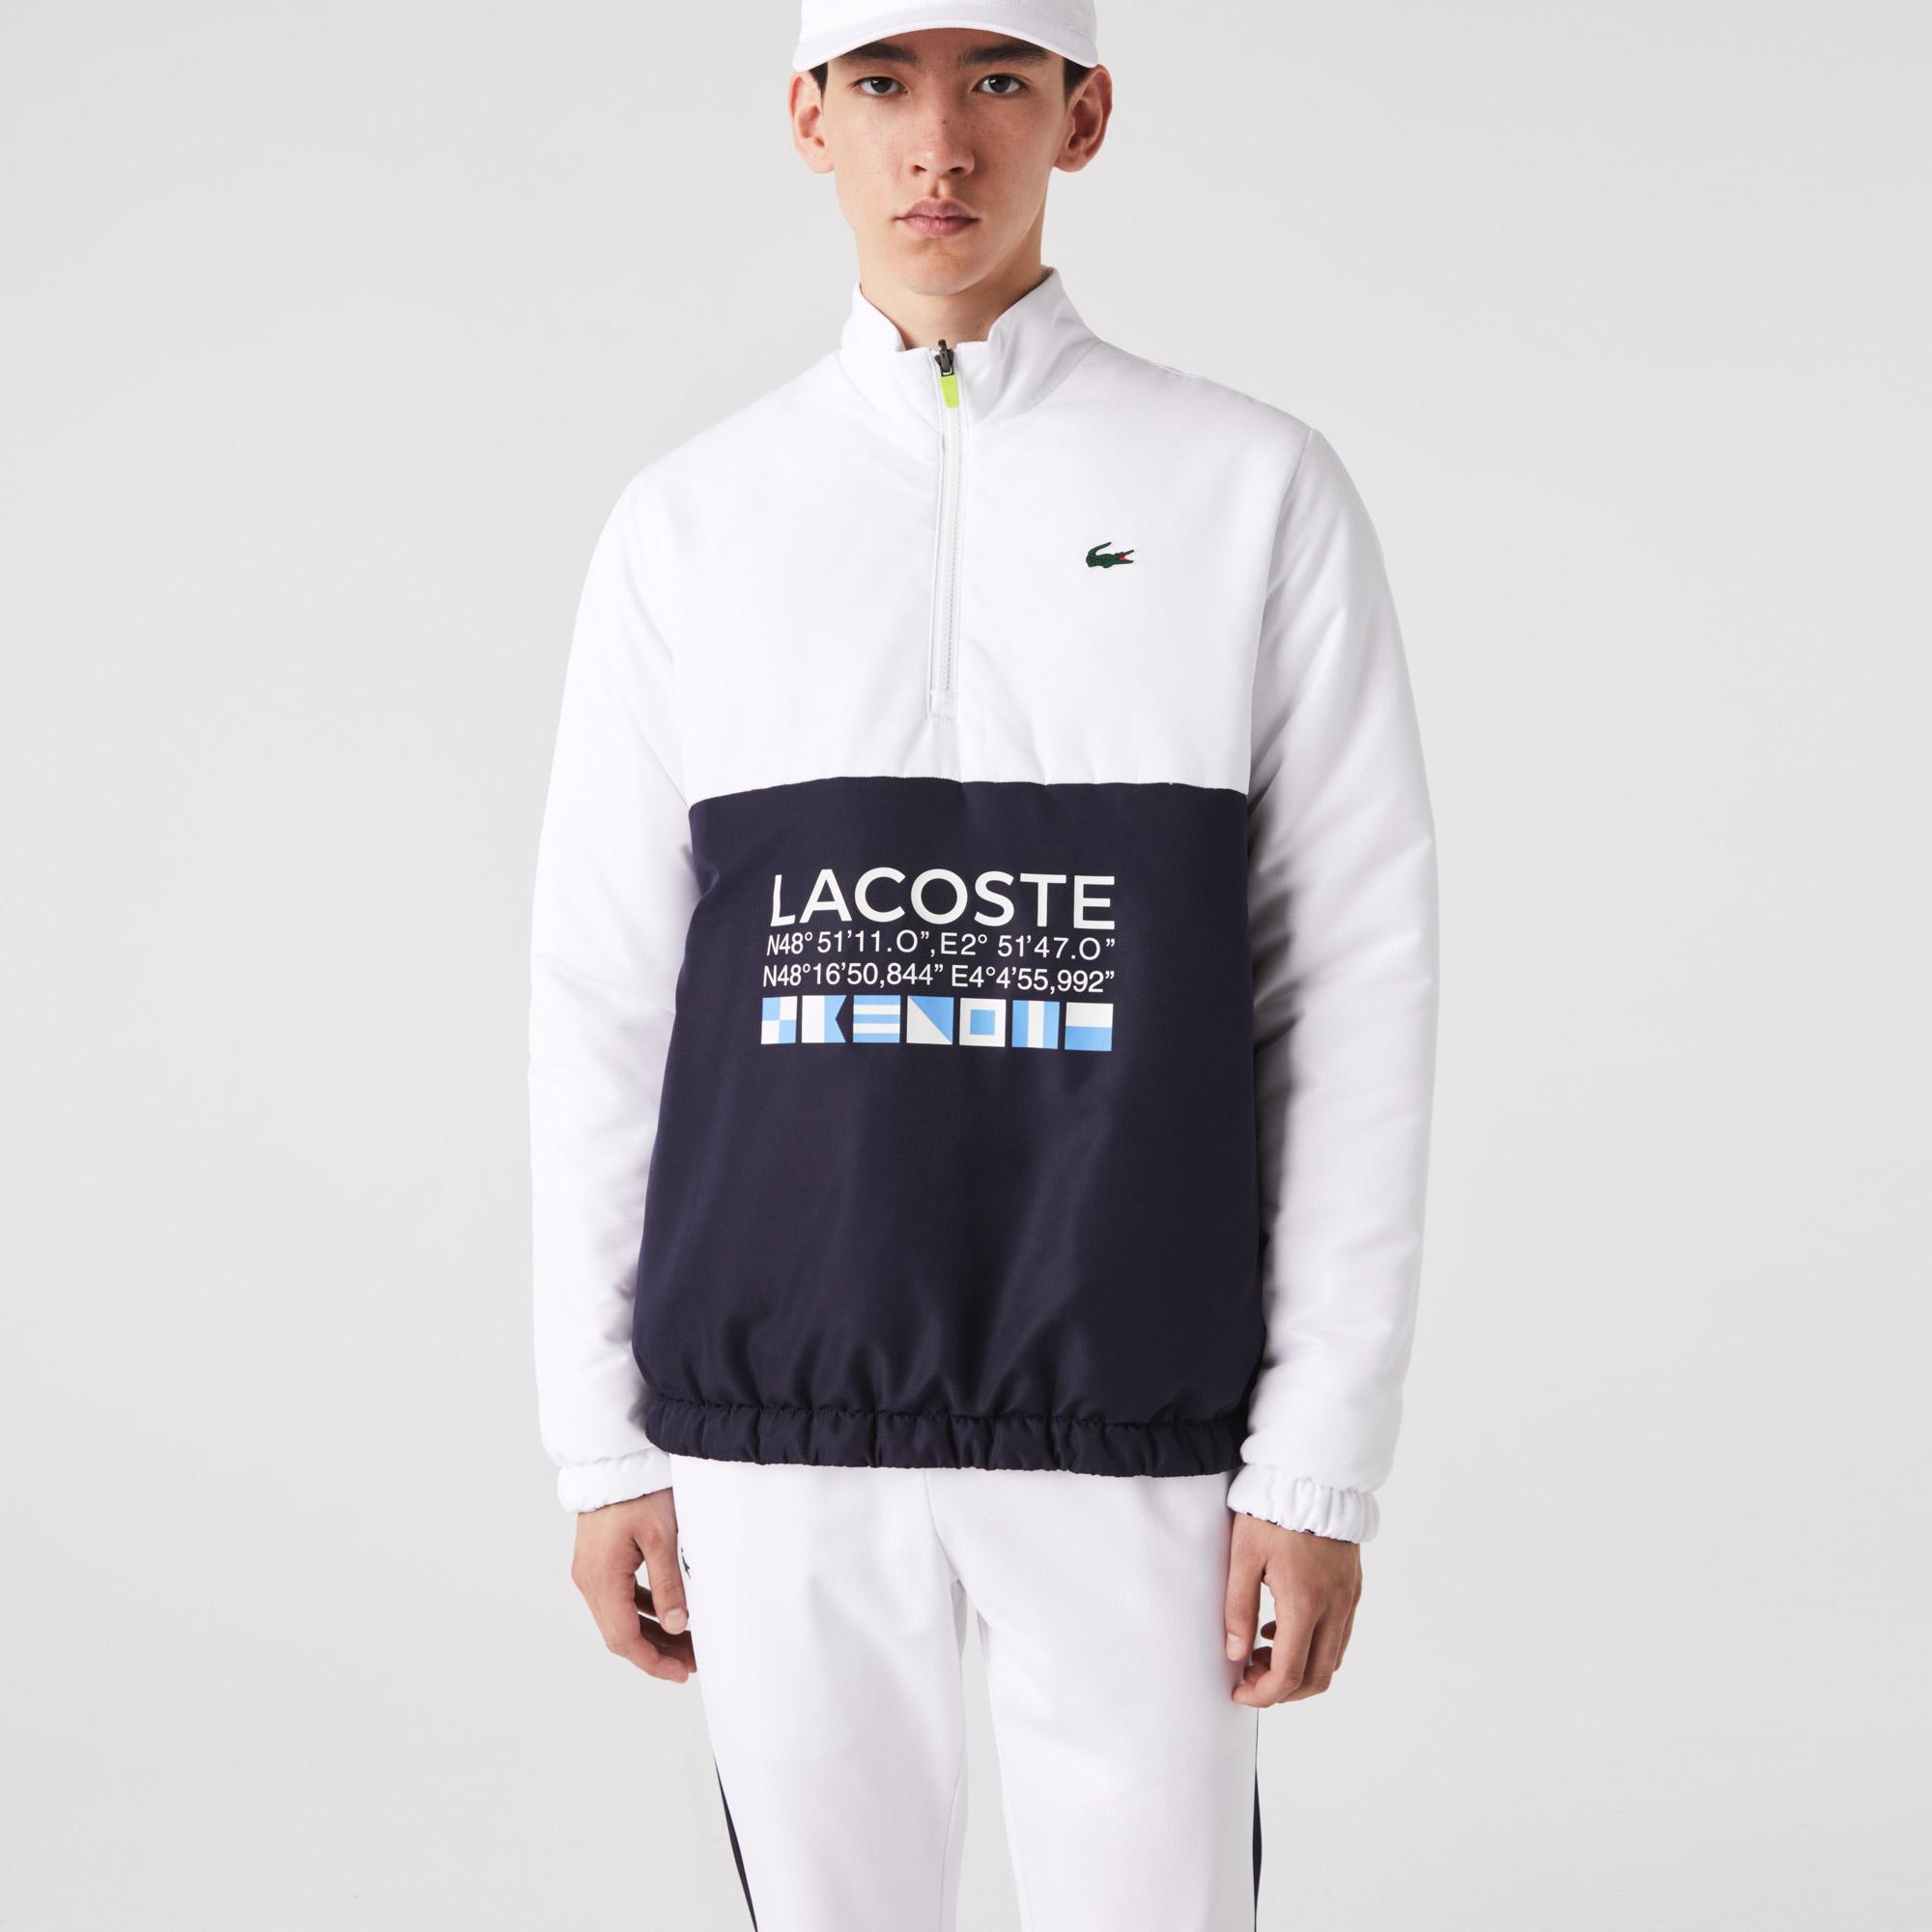 Lacoste Men's  SPORT Reversible Water-Repellent Tennis Jacket